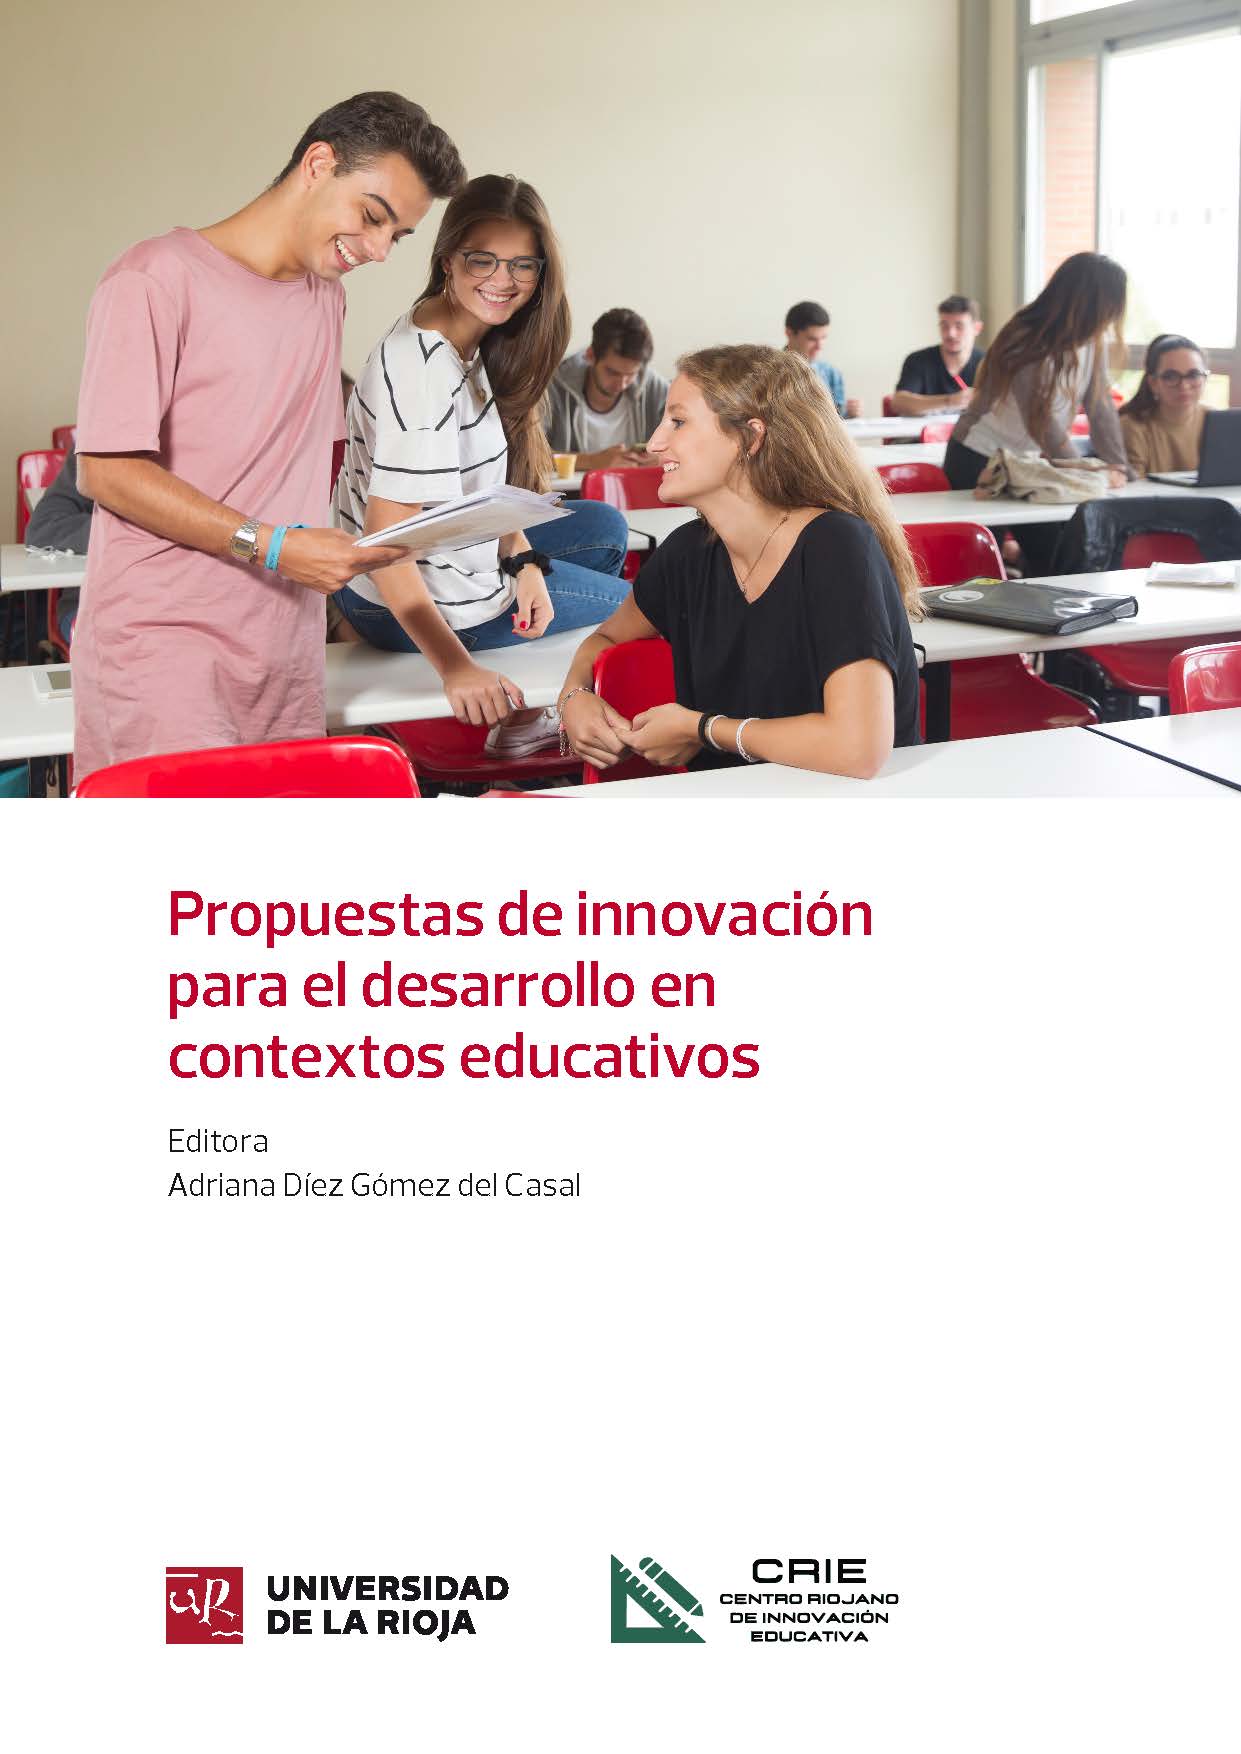 Imagen de portada del libro Propuestas de innovación para el desarrollo en contextos educativos